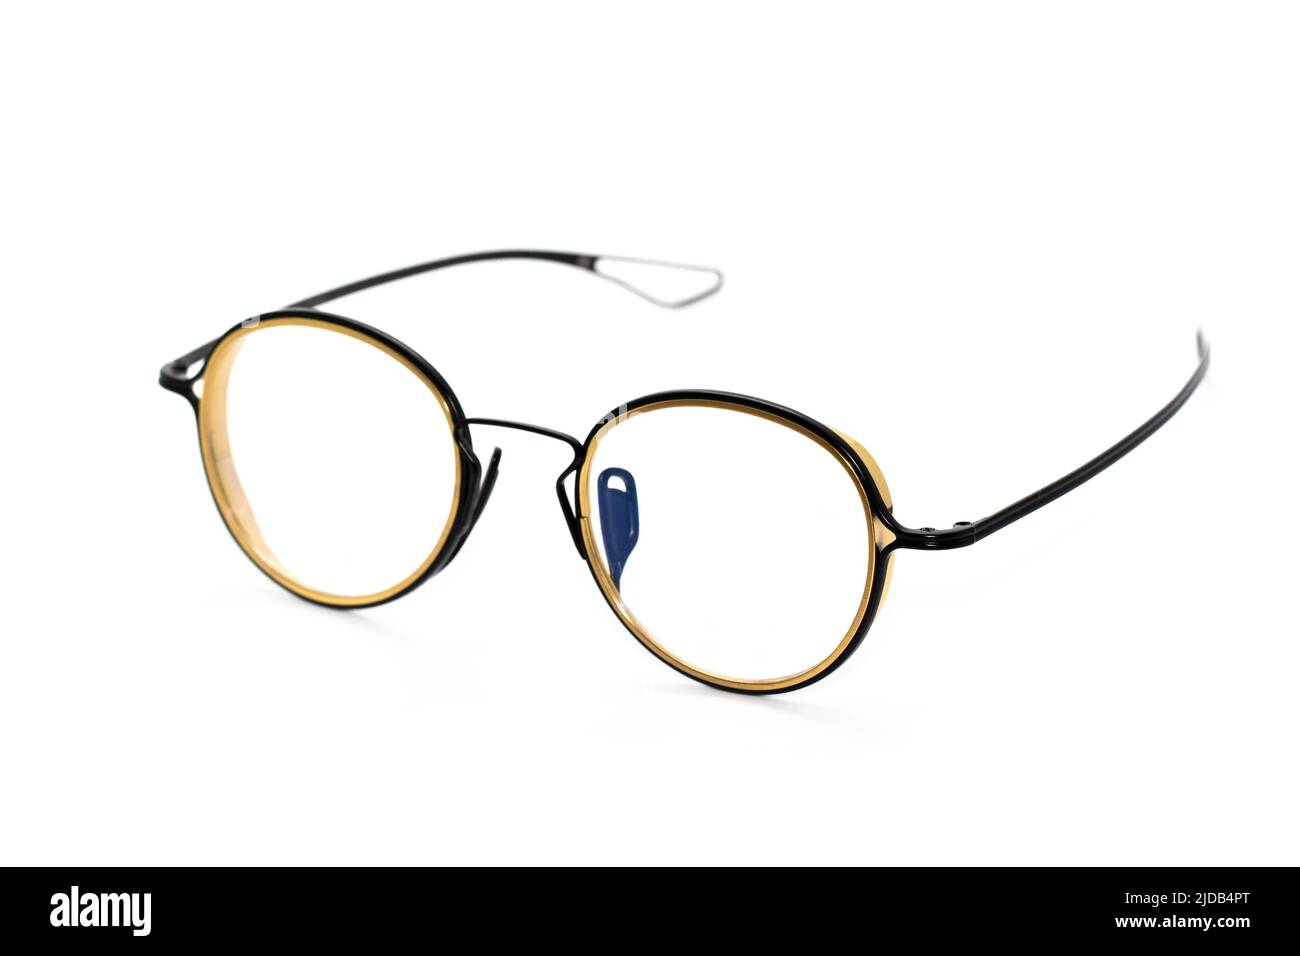 Image de lunettes modernes et tendance isolées sur fond blanc, lunettes, lunettes. Banque D'Images